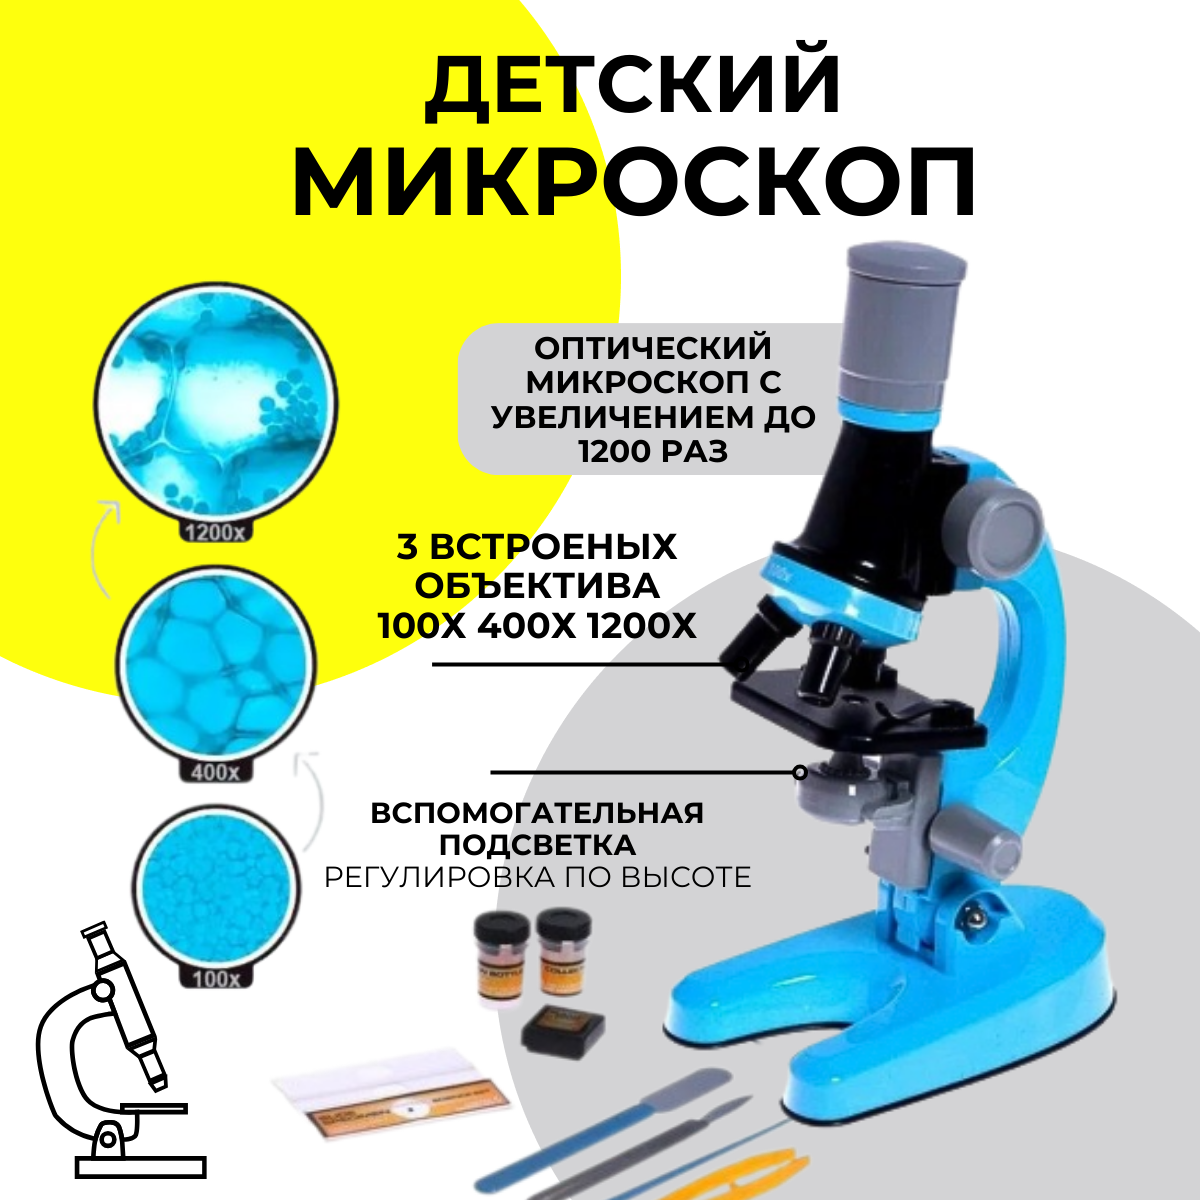 Микроскоп MKB4849708 детский Юный ботаник с подсветкой, кратность х100, х400, х1200 детский портативный микроскоп увеличение 60х 120х 4599 2